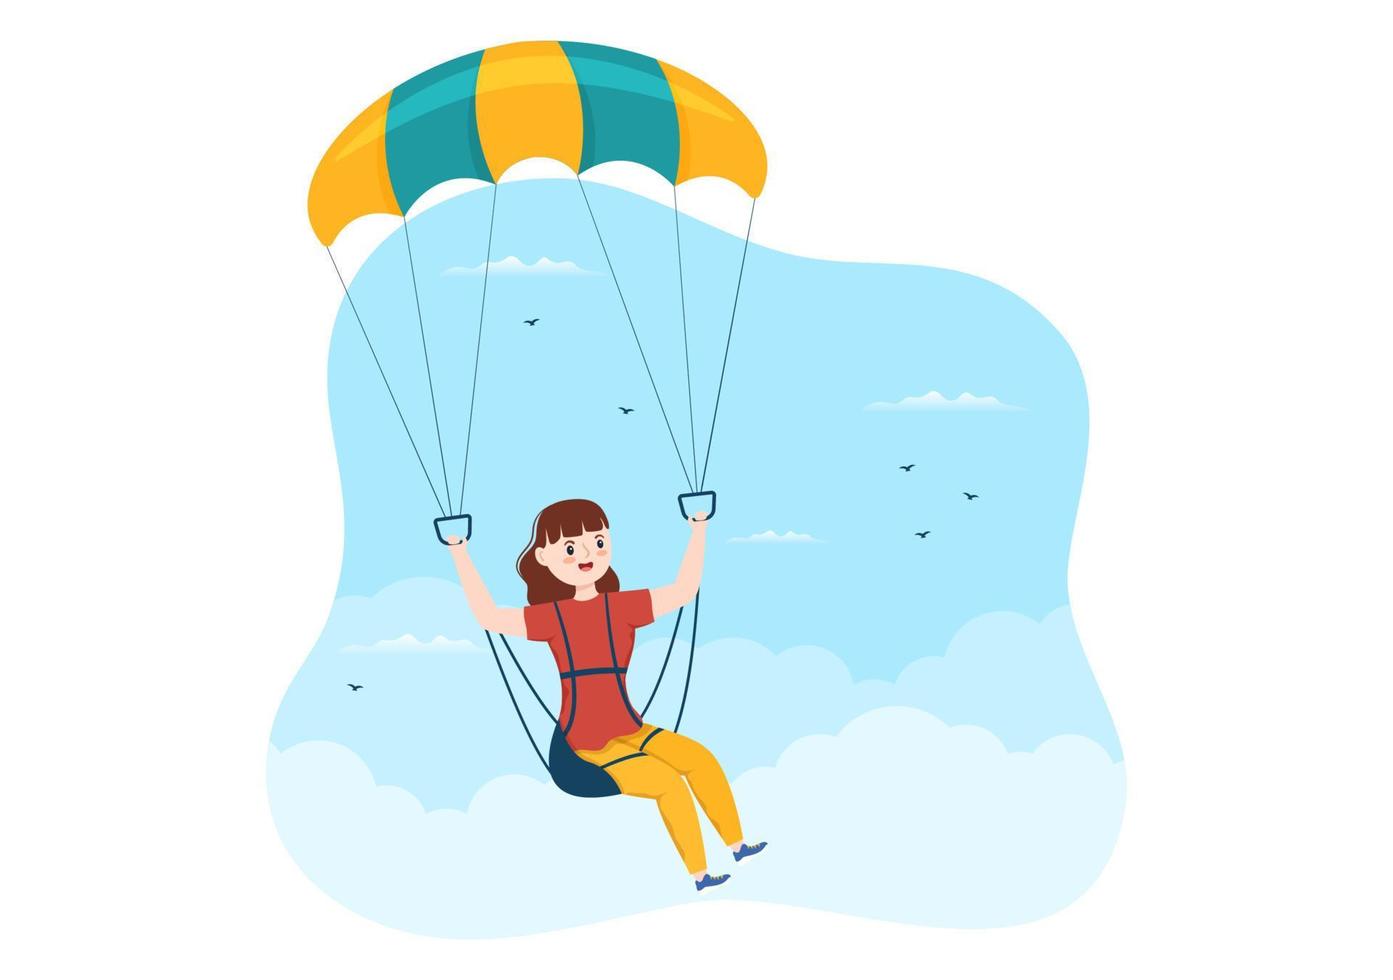 fallschirmspringen illustration mit fallschirmspringern verwenden fallschirm und himmelsprung für outdoor-aktivitäten in flachen handgezeichneten vorlagen für extreme sportkarikaturen vektor